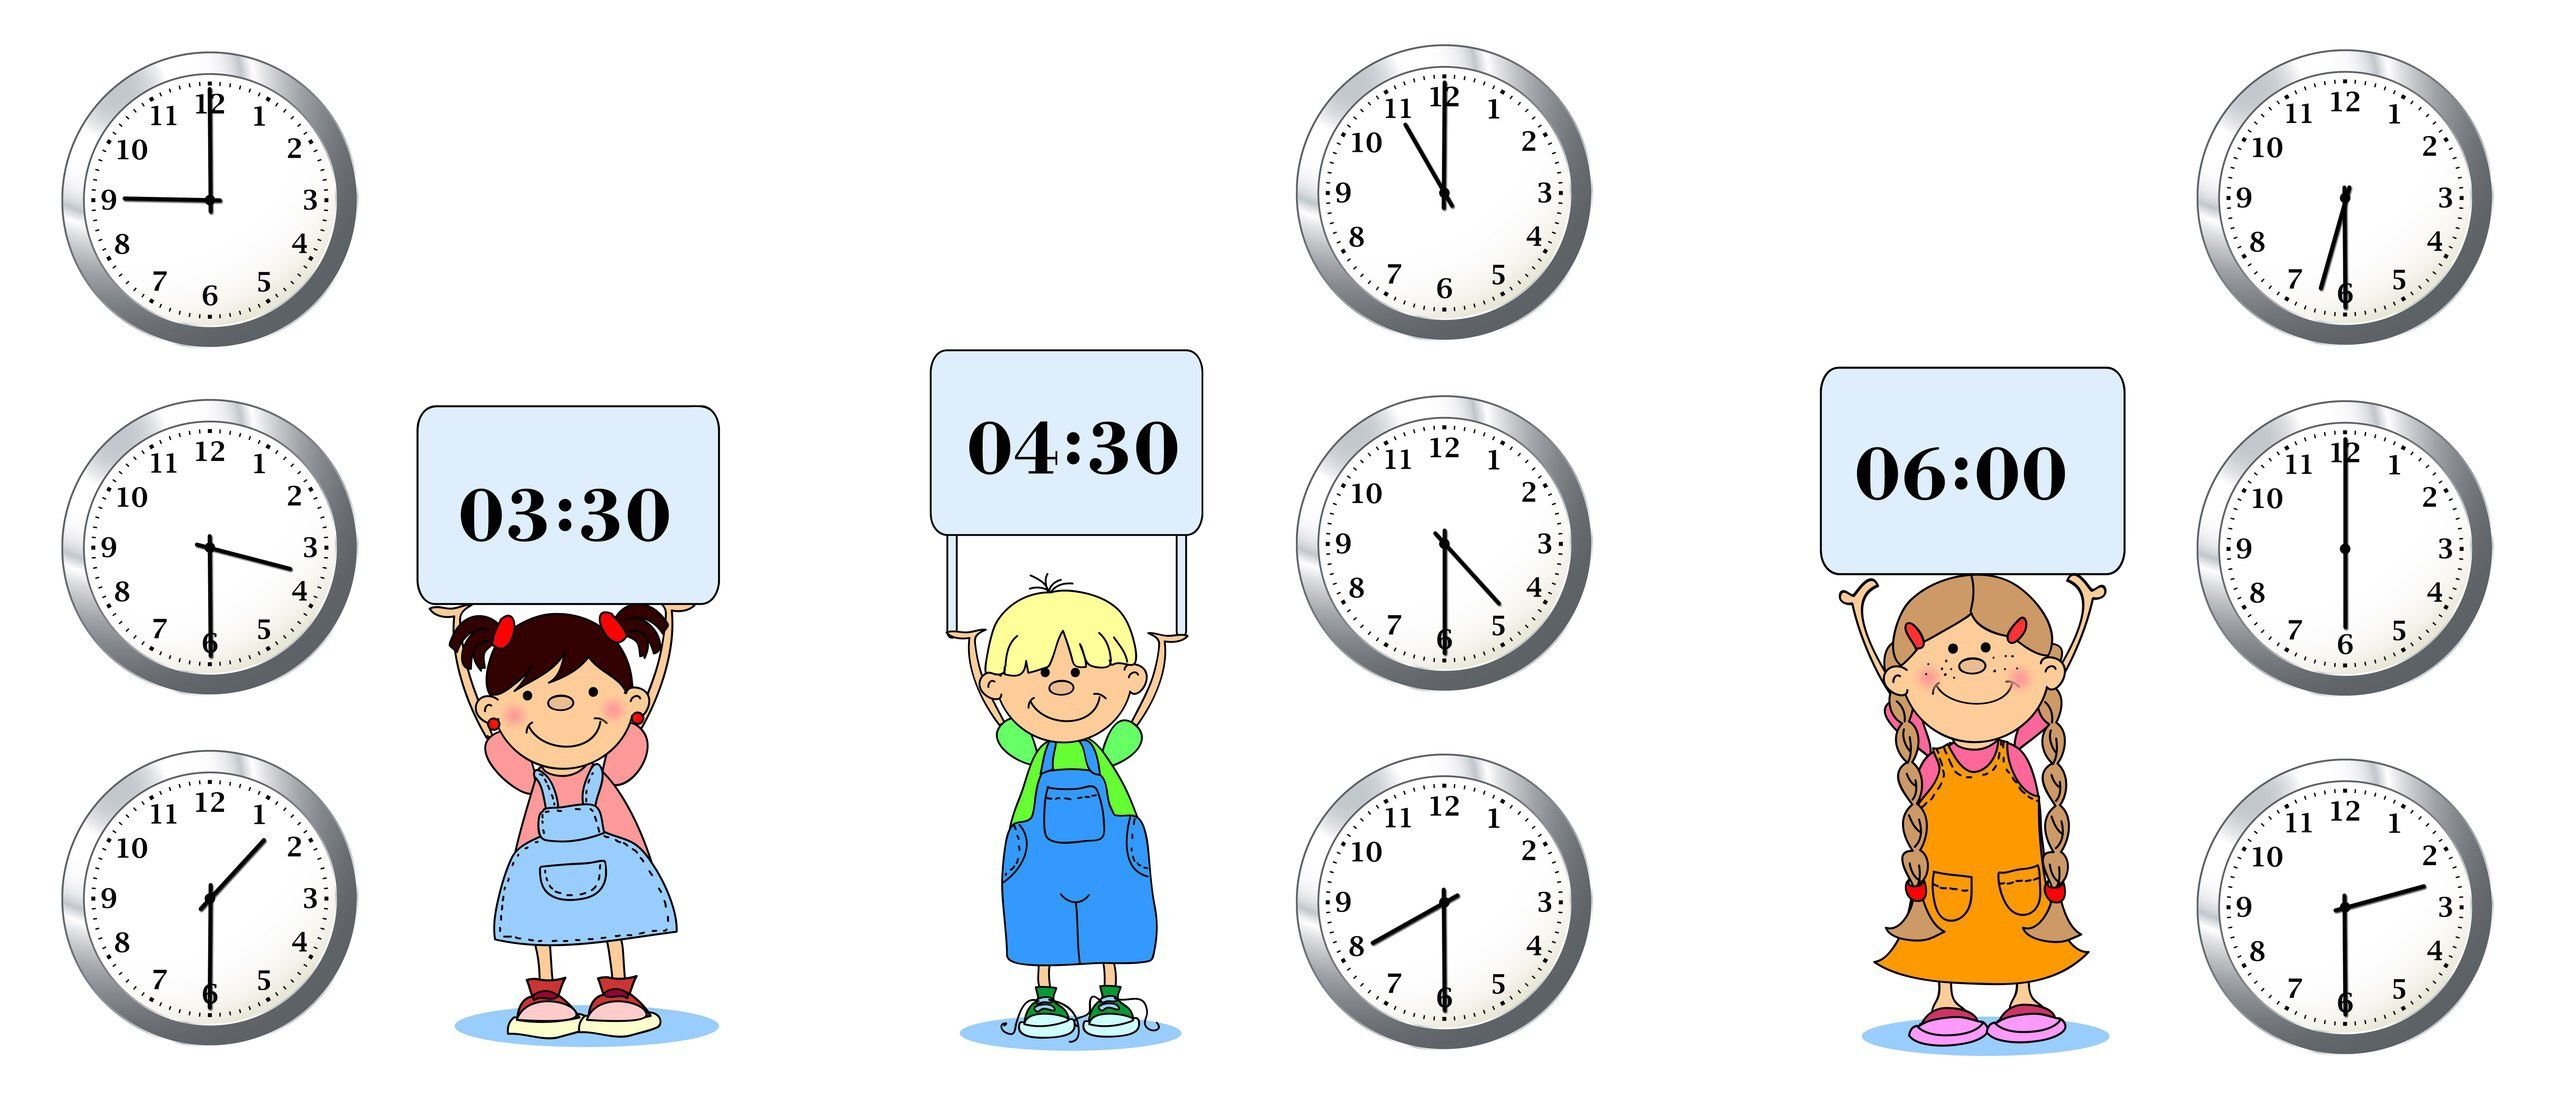 8 лет в секундах. Часы для изучения времени детям. Изучение часов для детей в картинках. Часы задания для дошкольников. Учим часы с детьми.